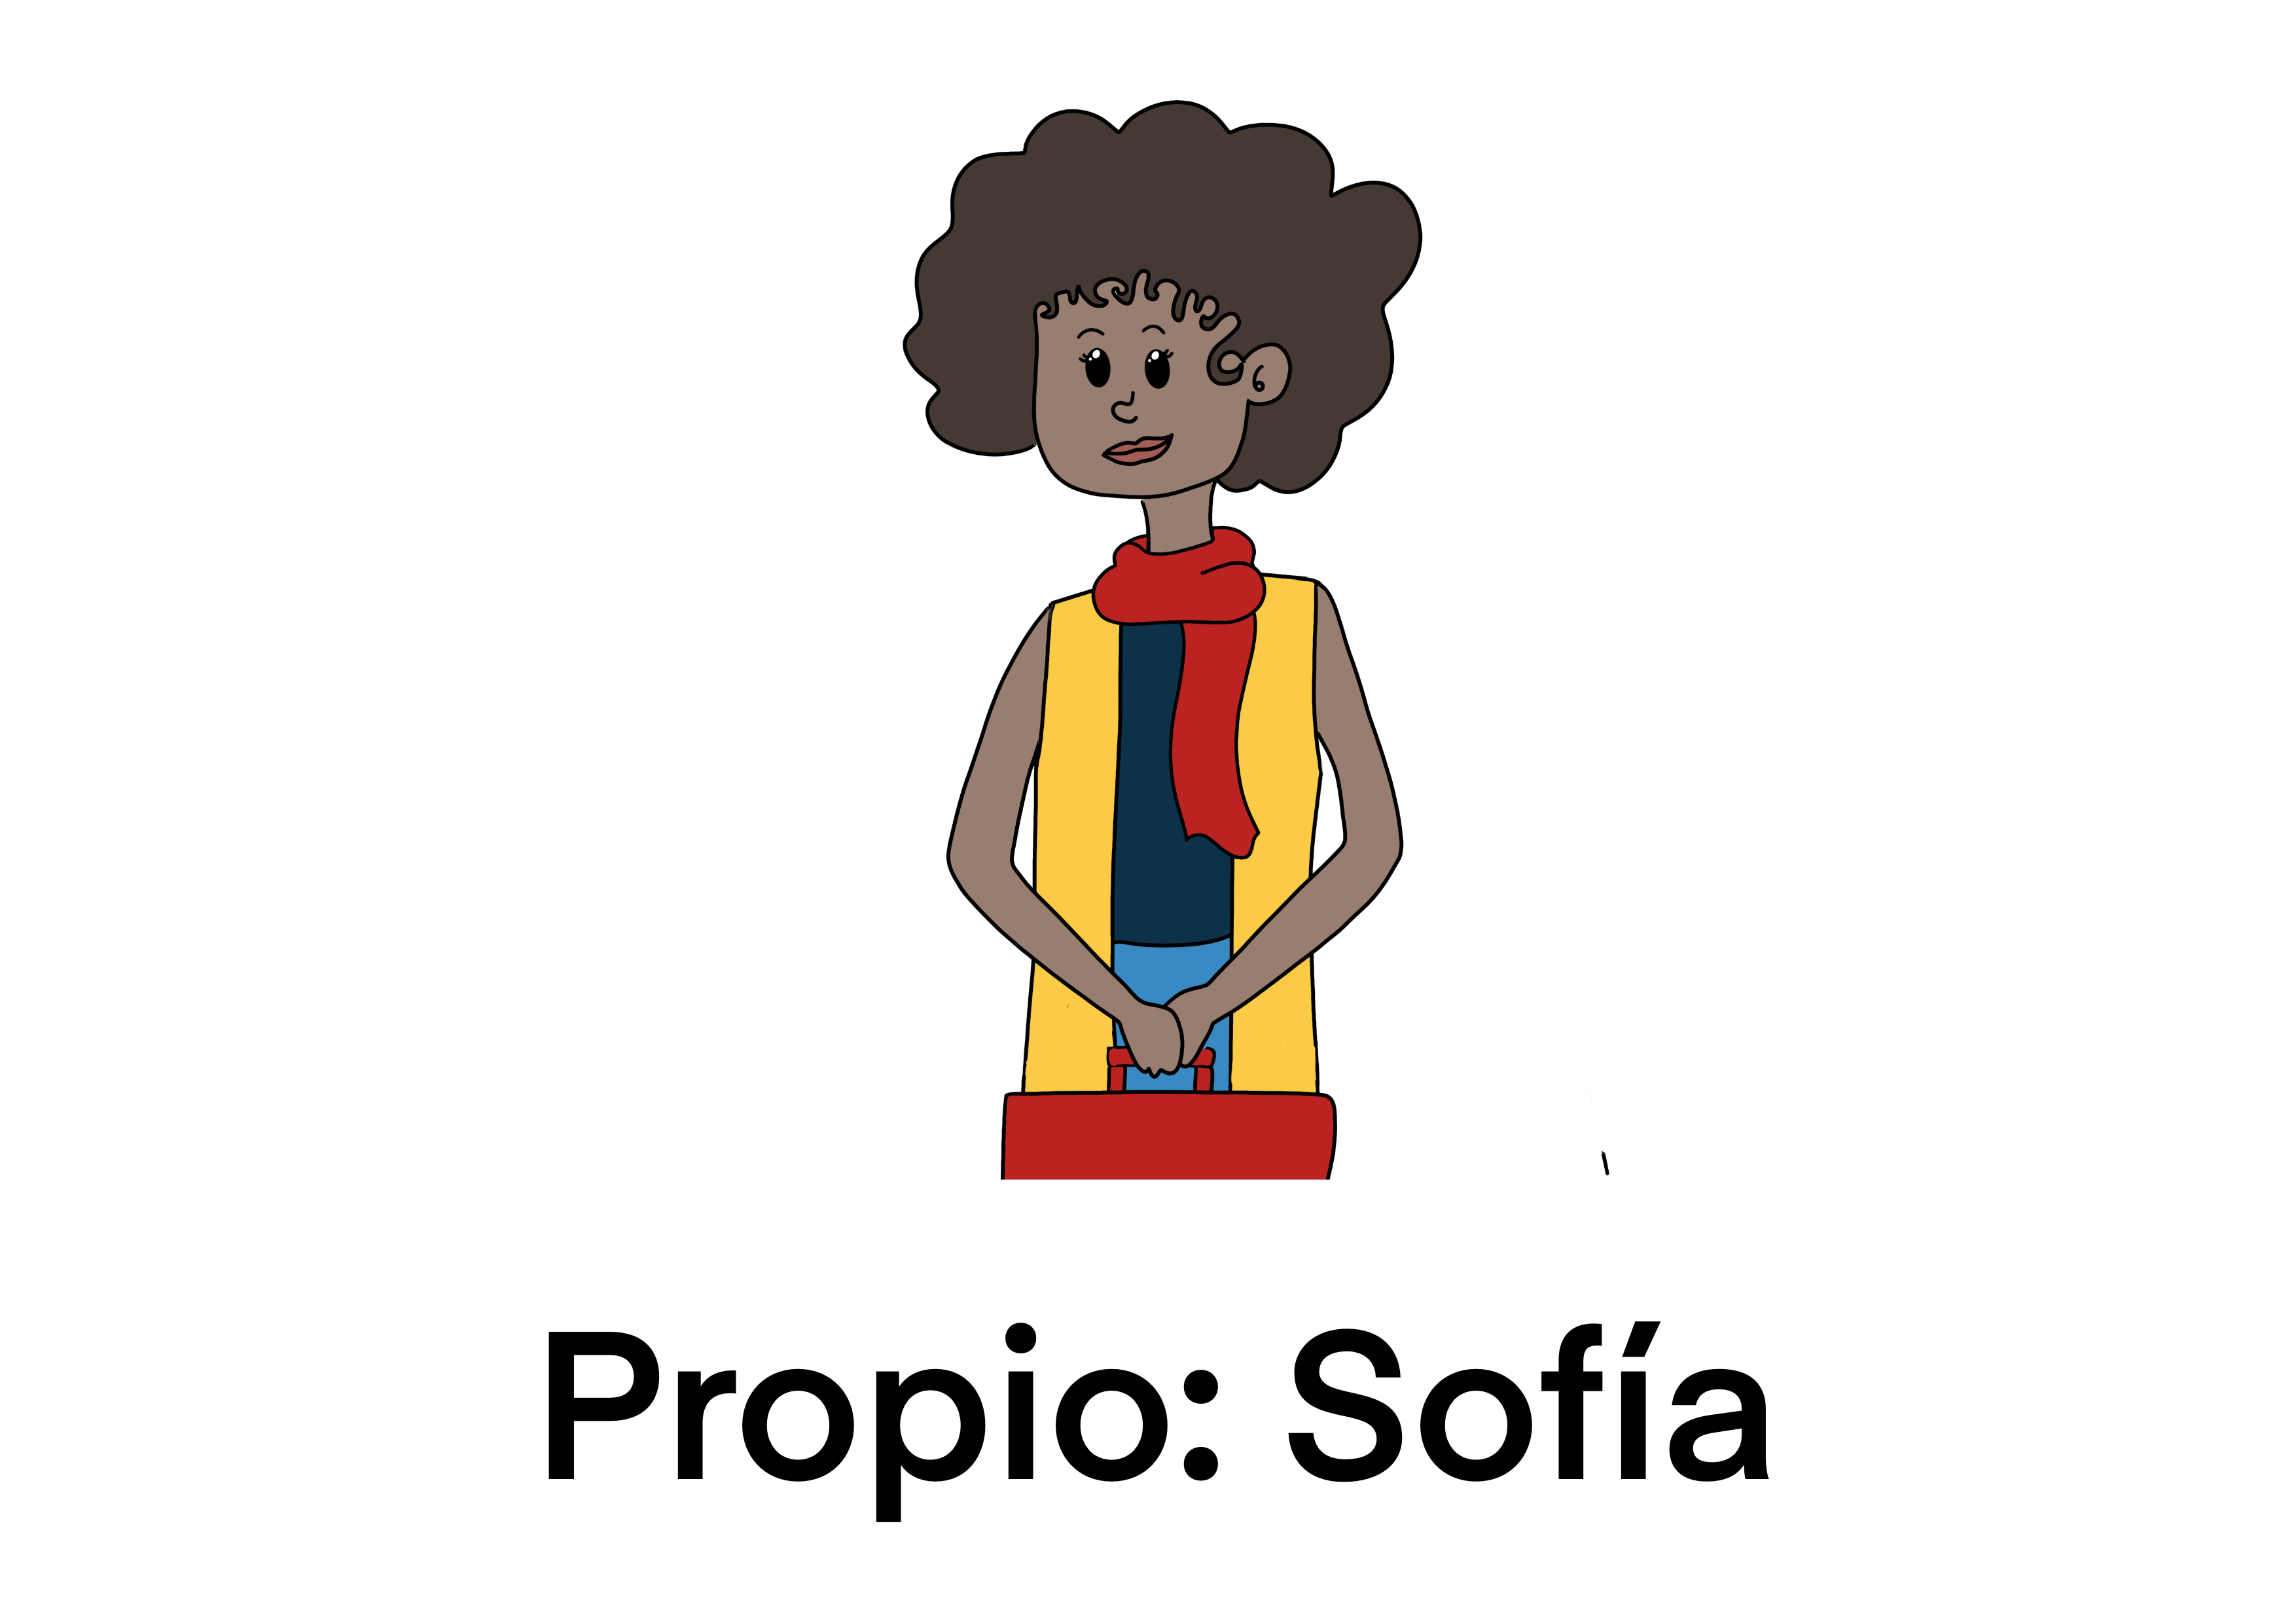 Sofía: propio